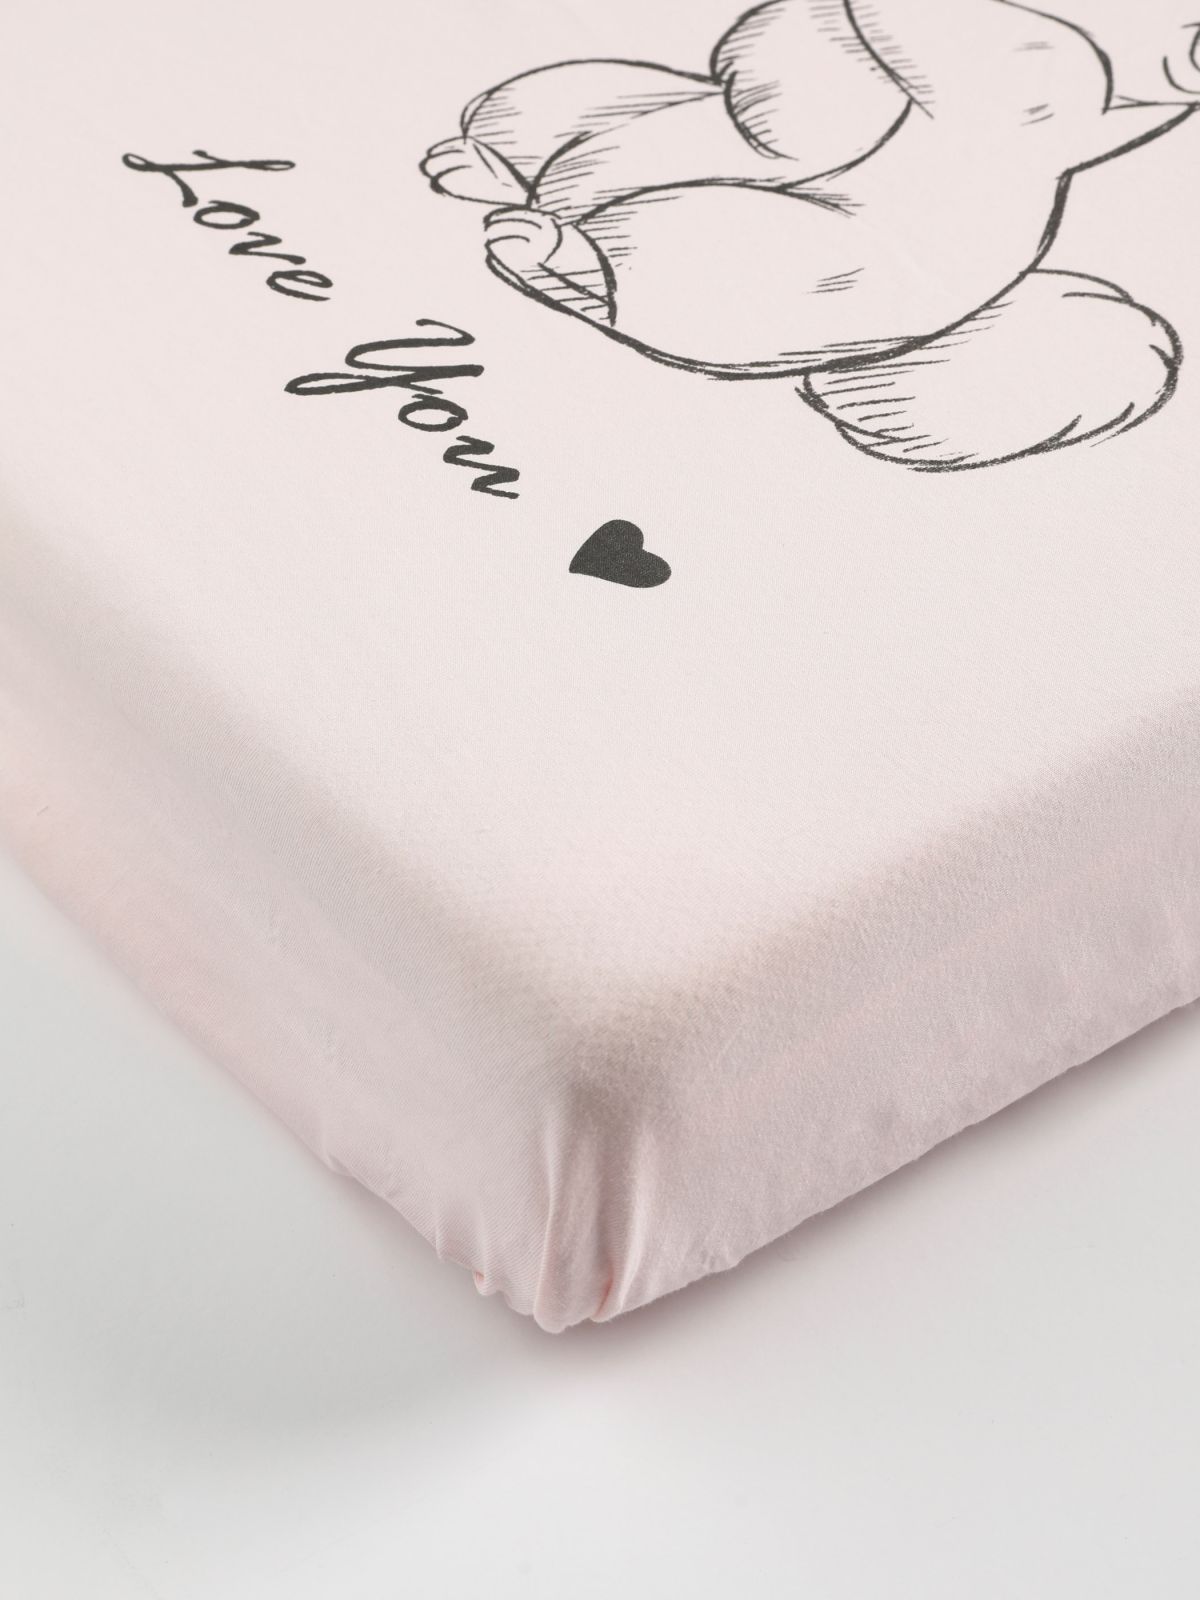  זוג סדינים בהדפס למיטת תינוק / בייבי של FOX